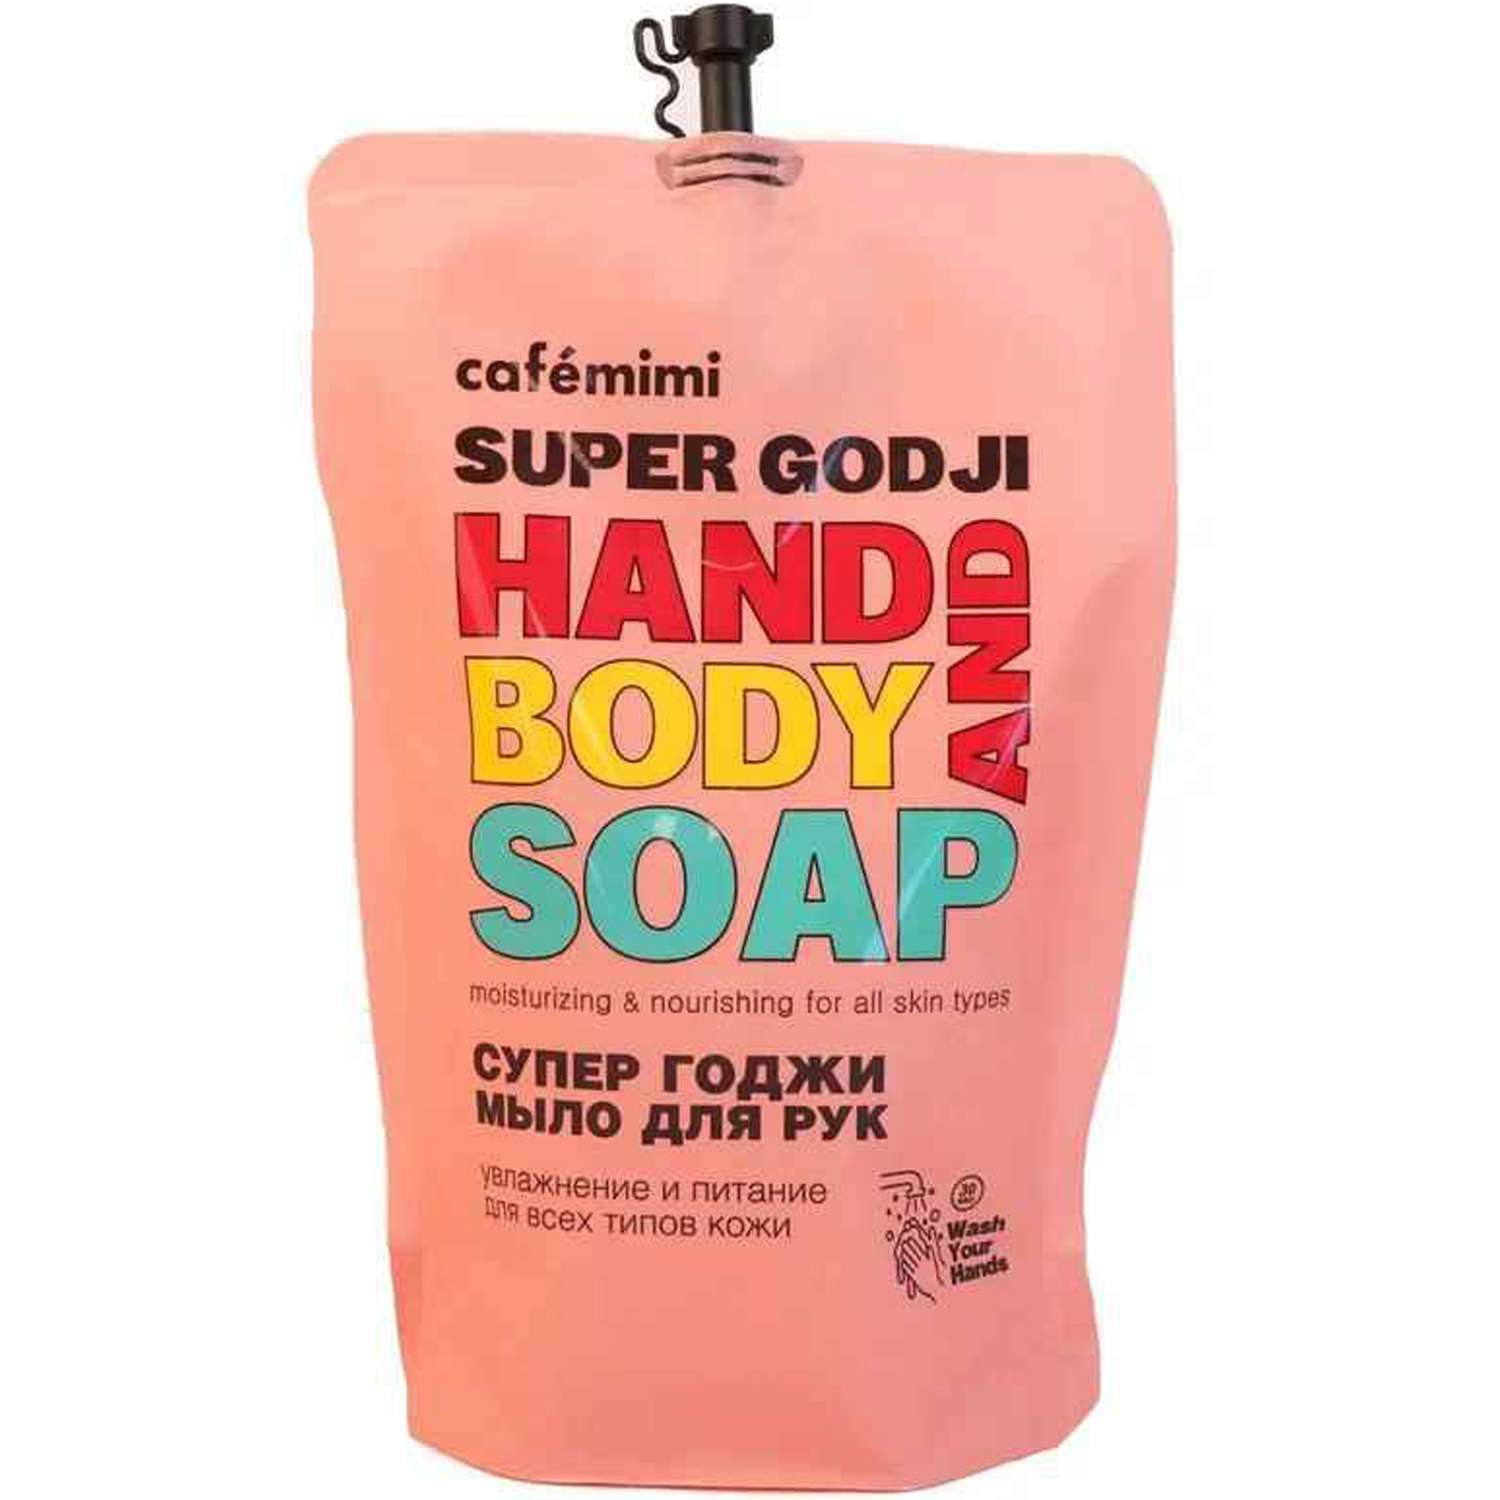 Жидкое мыло для рук cafe mimi Super Food супер годжи 450 мл - фото 1